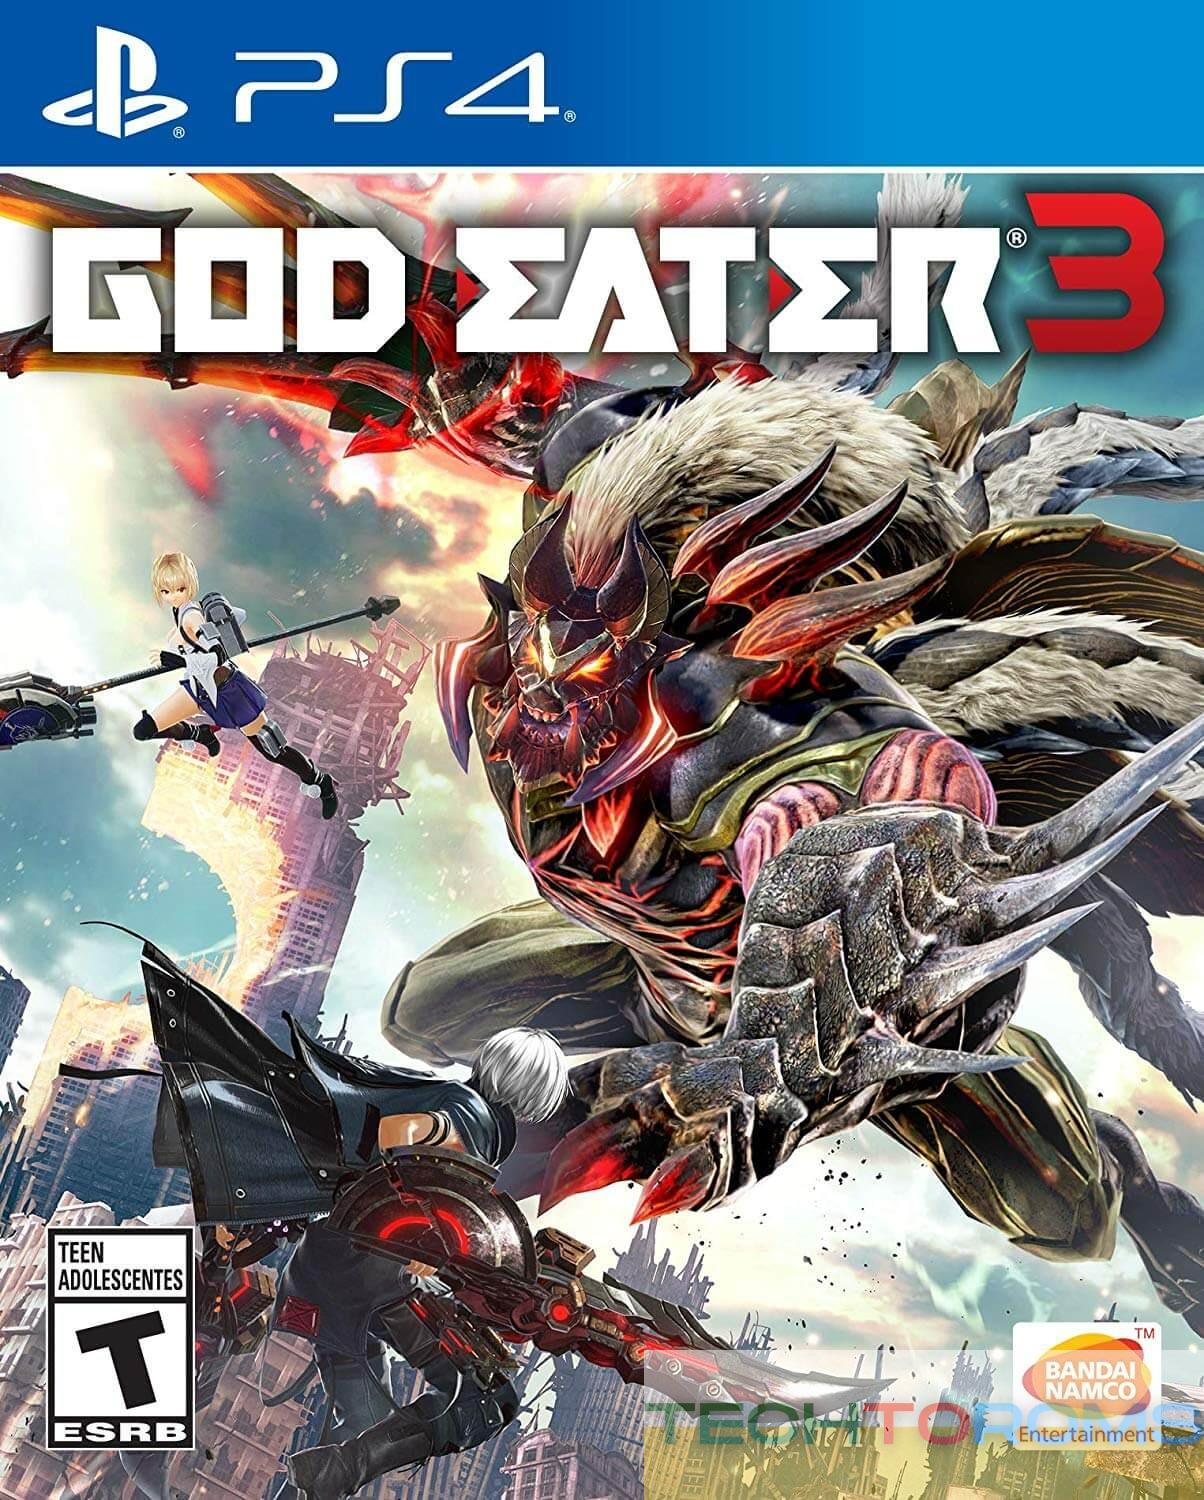 GOD EATER 3